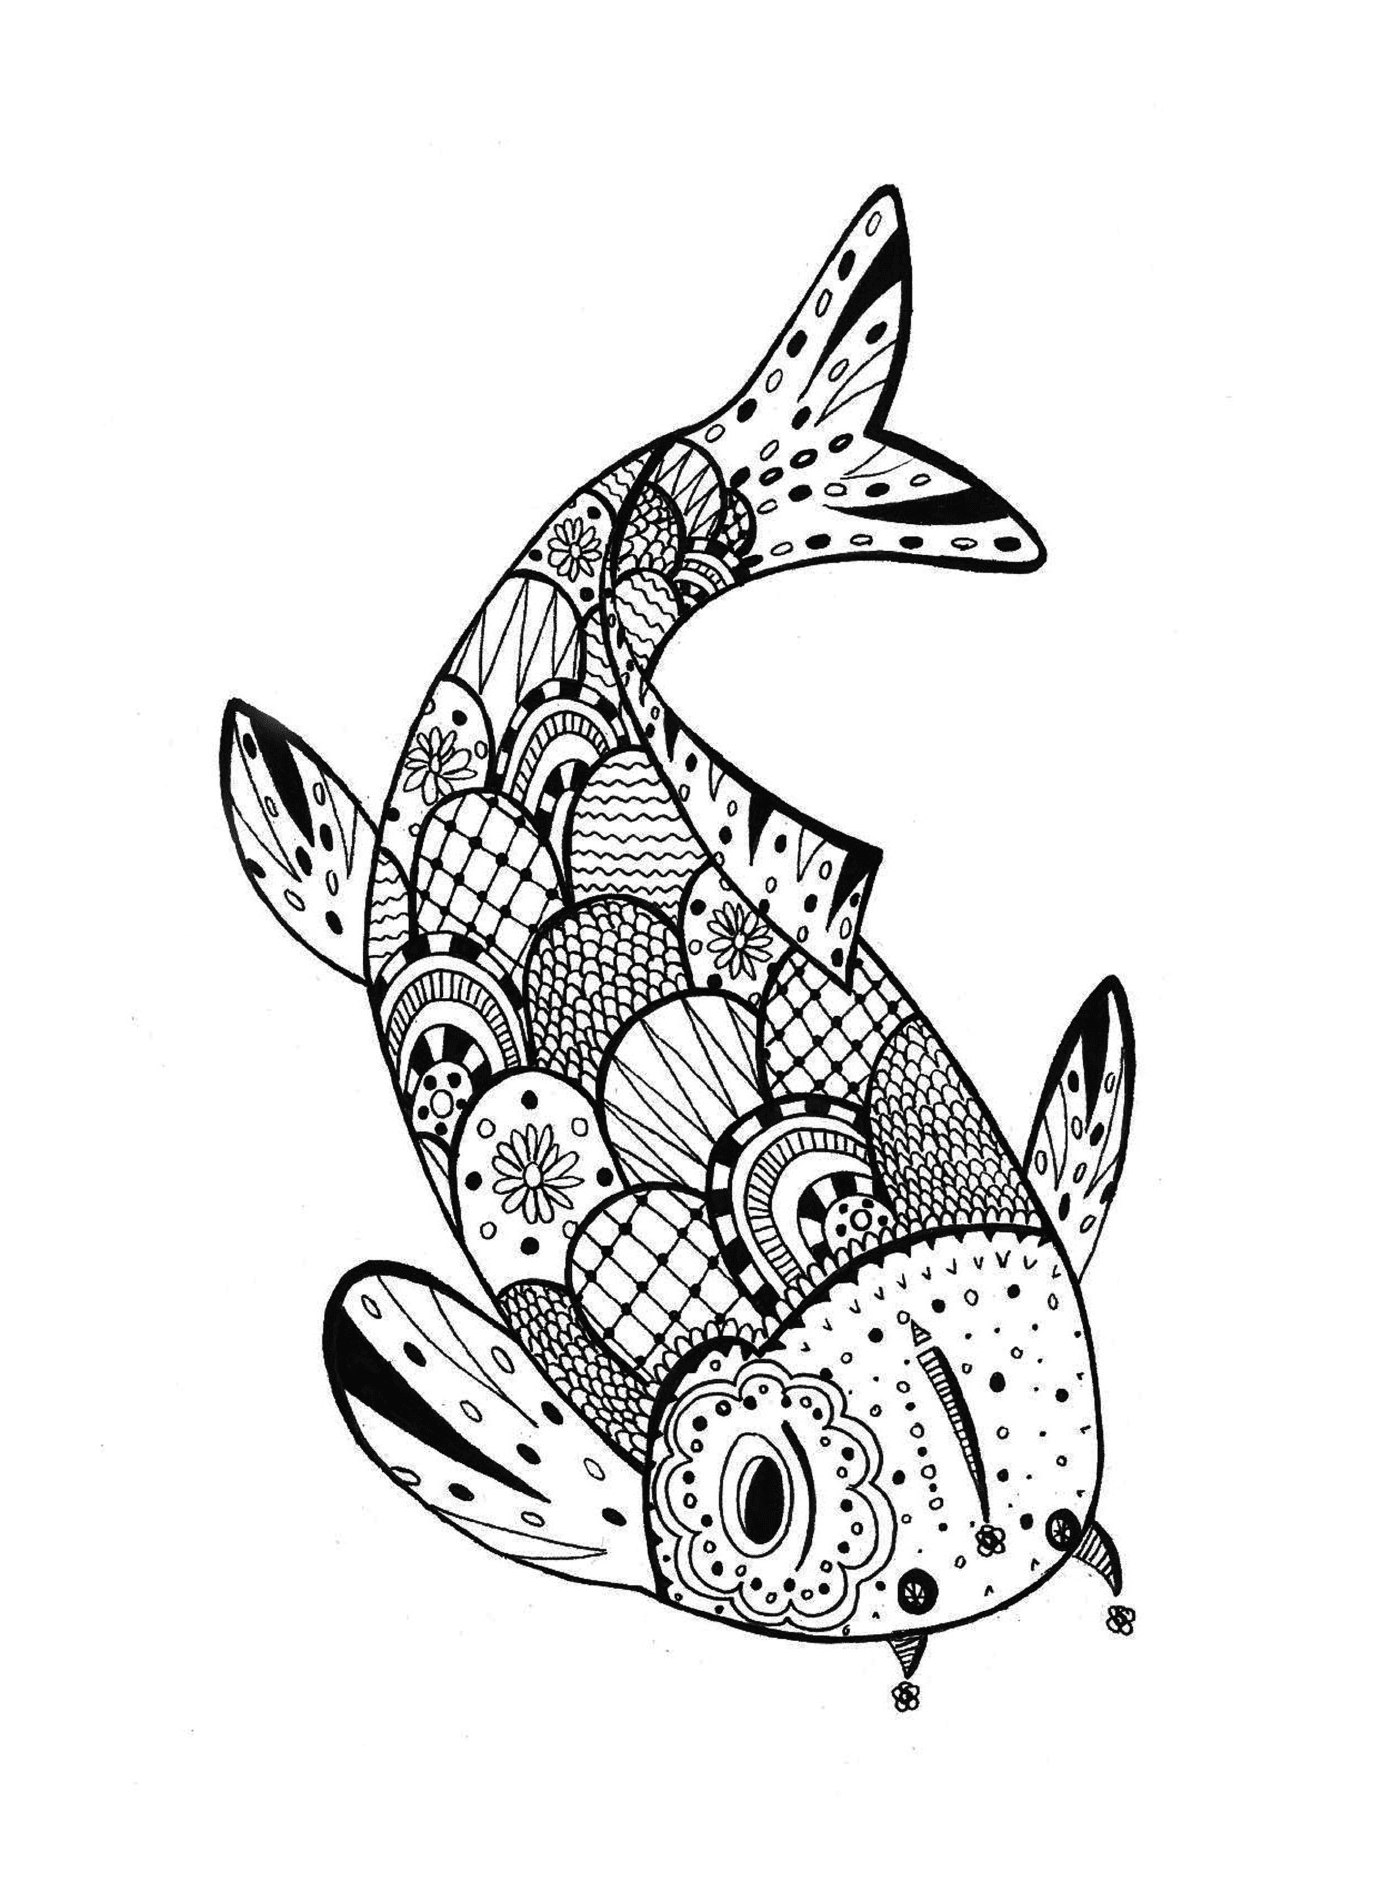  April fish drawn in mandala 